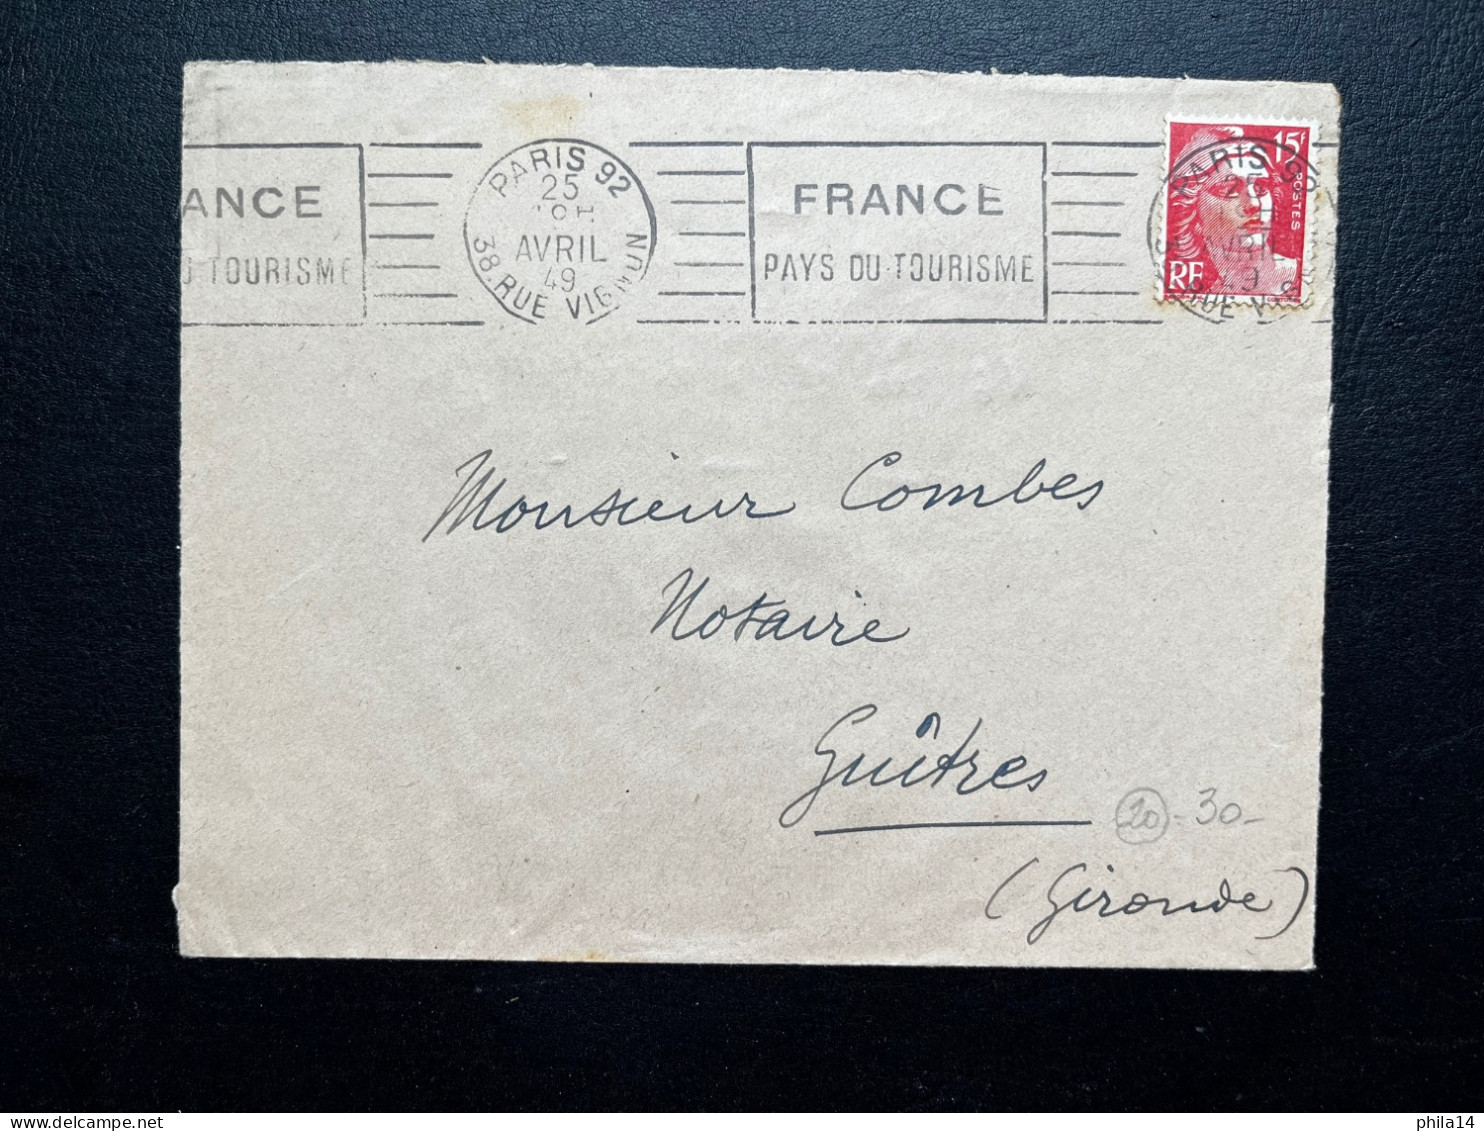 15f MARIANNE DE GANDON SUR ENVELOPPE / PARIS 92 38 R.VIGNON  / 1949 / FRANCE PAYS DU TOURISME - 1921-1960: Période Moderne